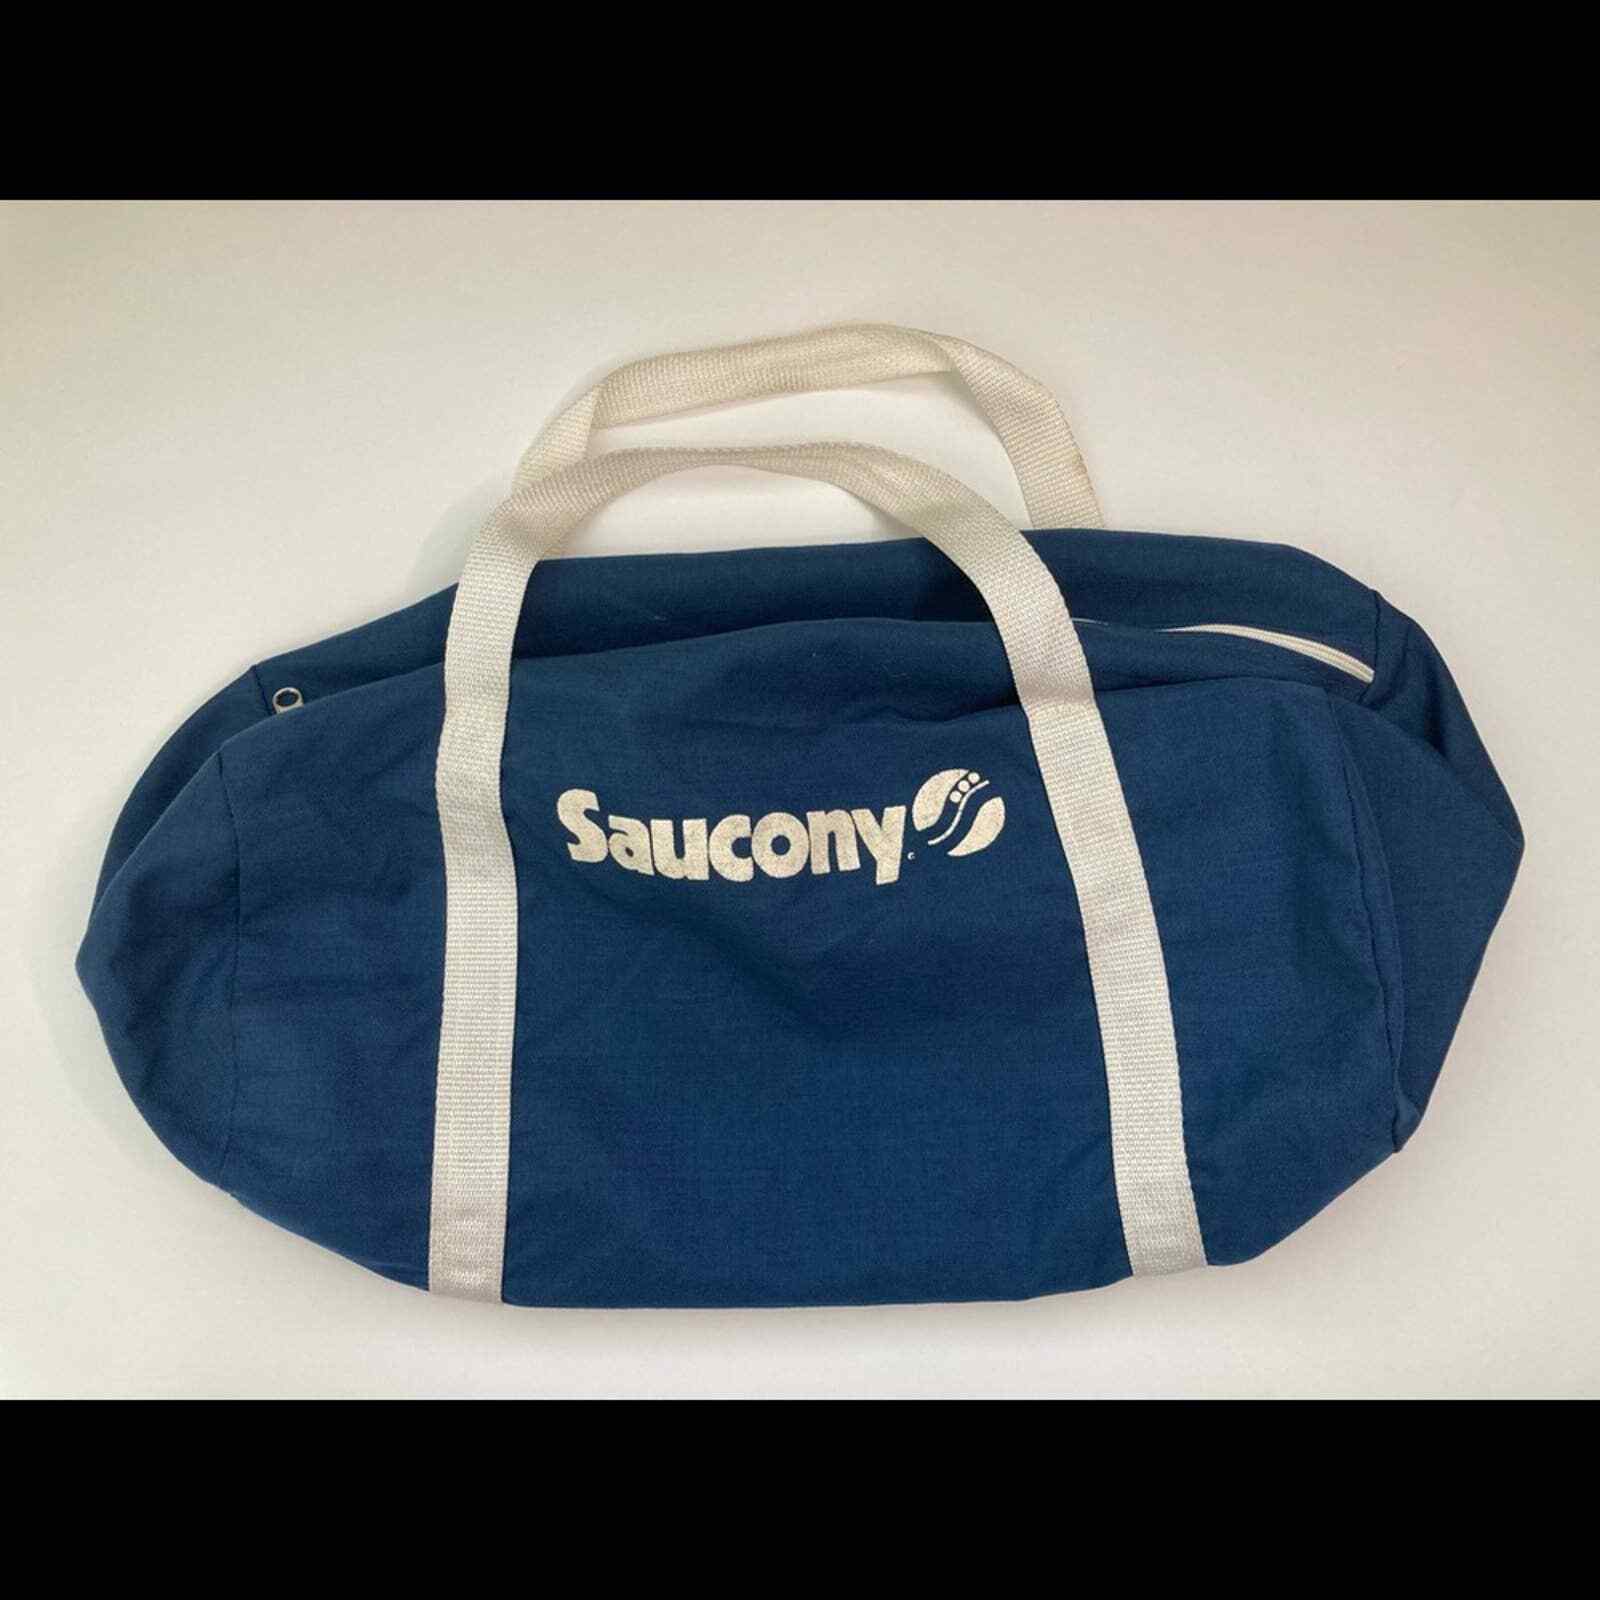 Saucony Vintage Navy Blue Gym Bag